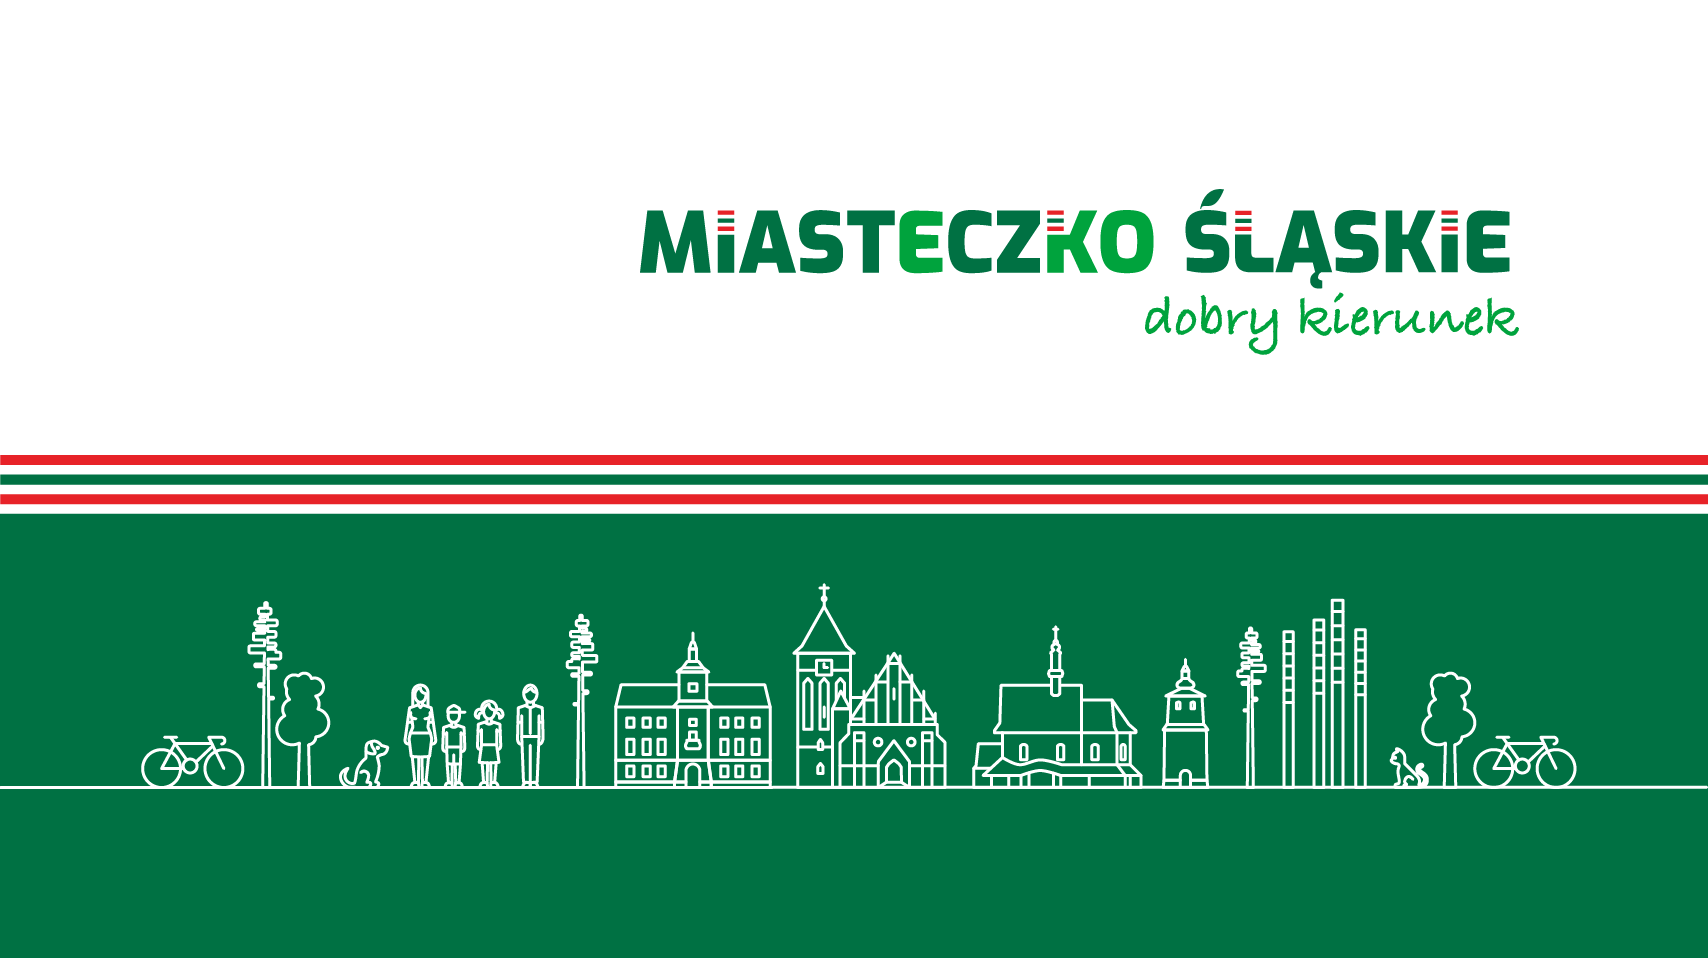 Zarządzenie Nr 1230/22 Burmistrza Miasta Miasteczko Śląskie